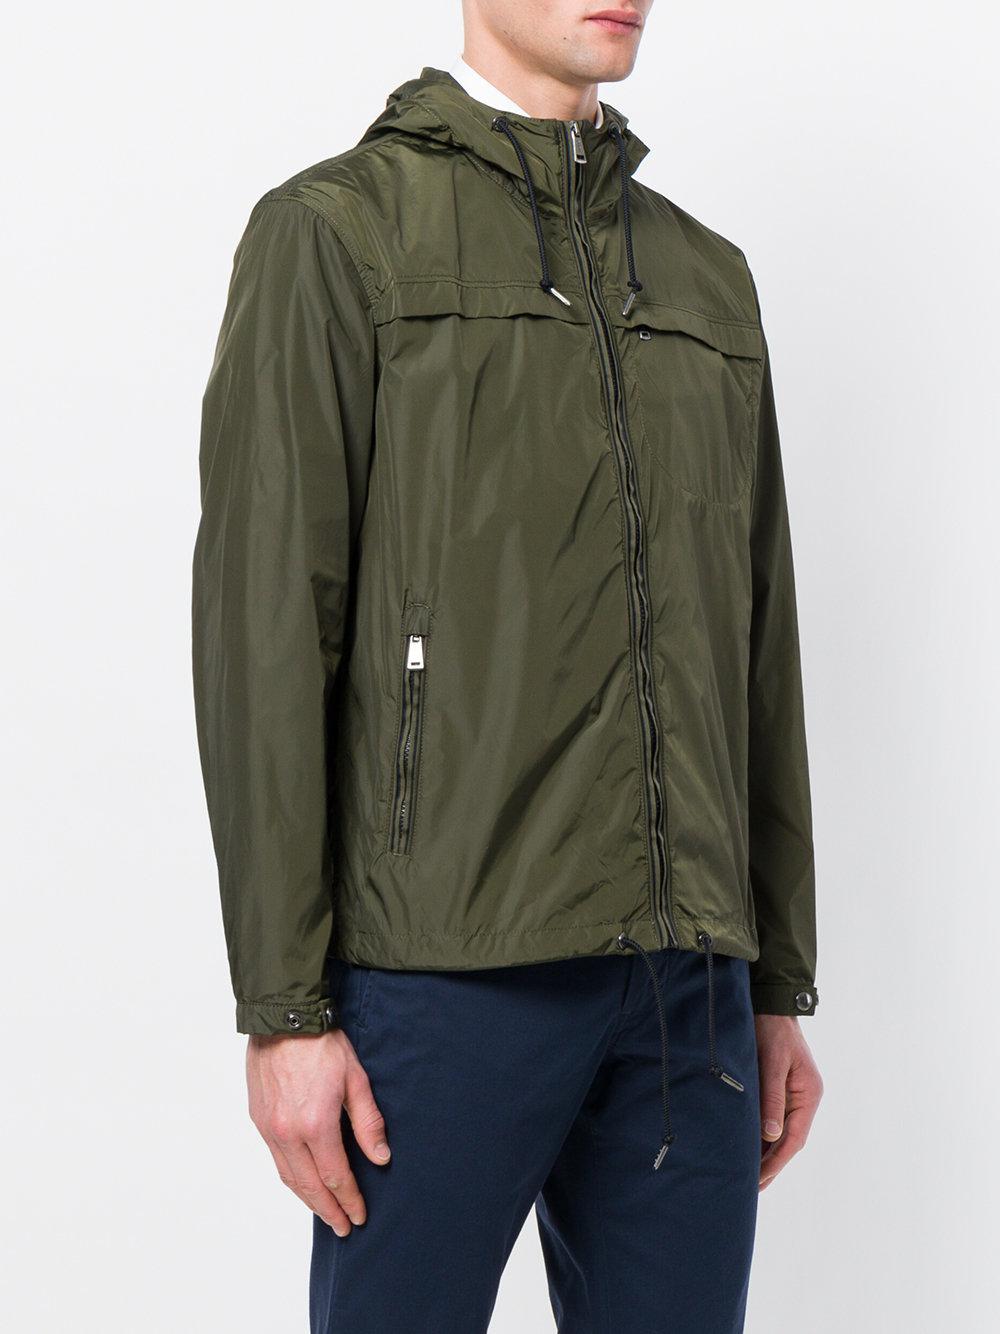 Polo Ralph Lauren Hooded Waterproof Jacket in Green for Men - Lyst